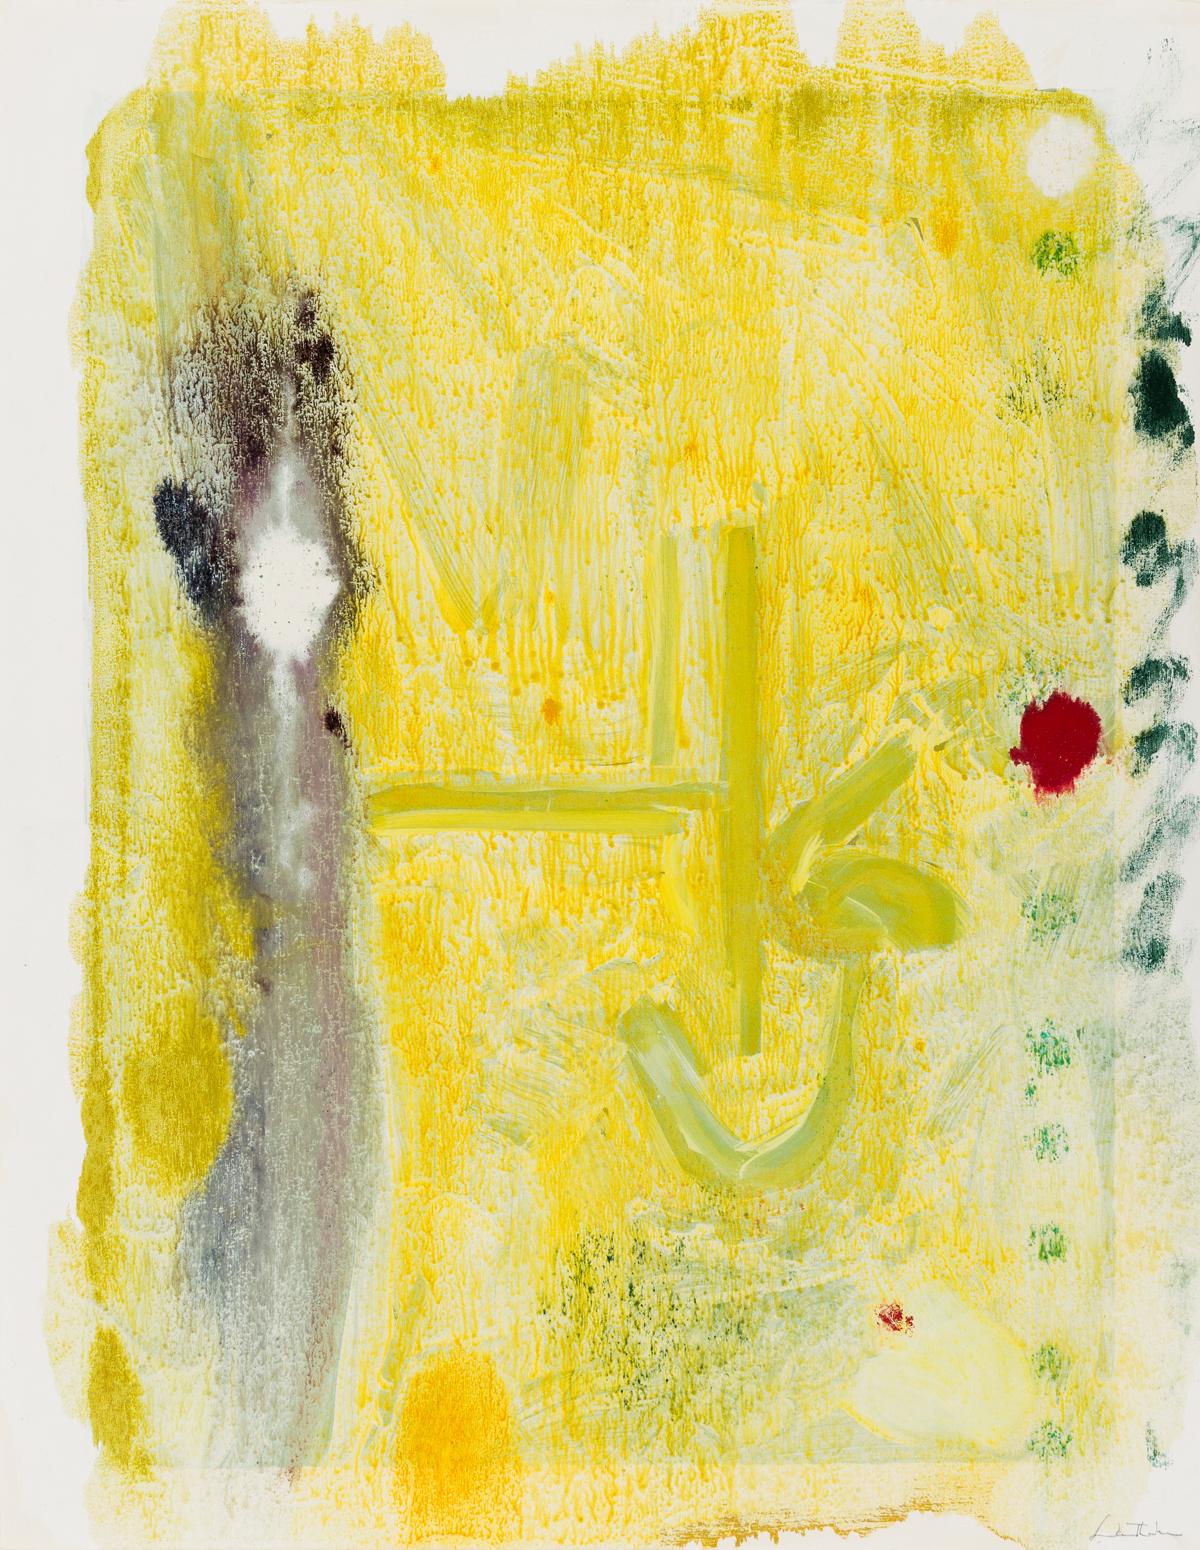 Abstract Print Helen Frankenthaler - Run XVI printemps-été